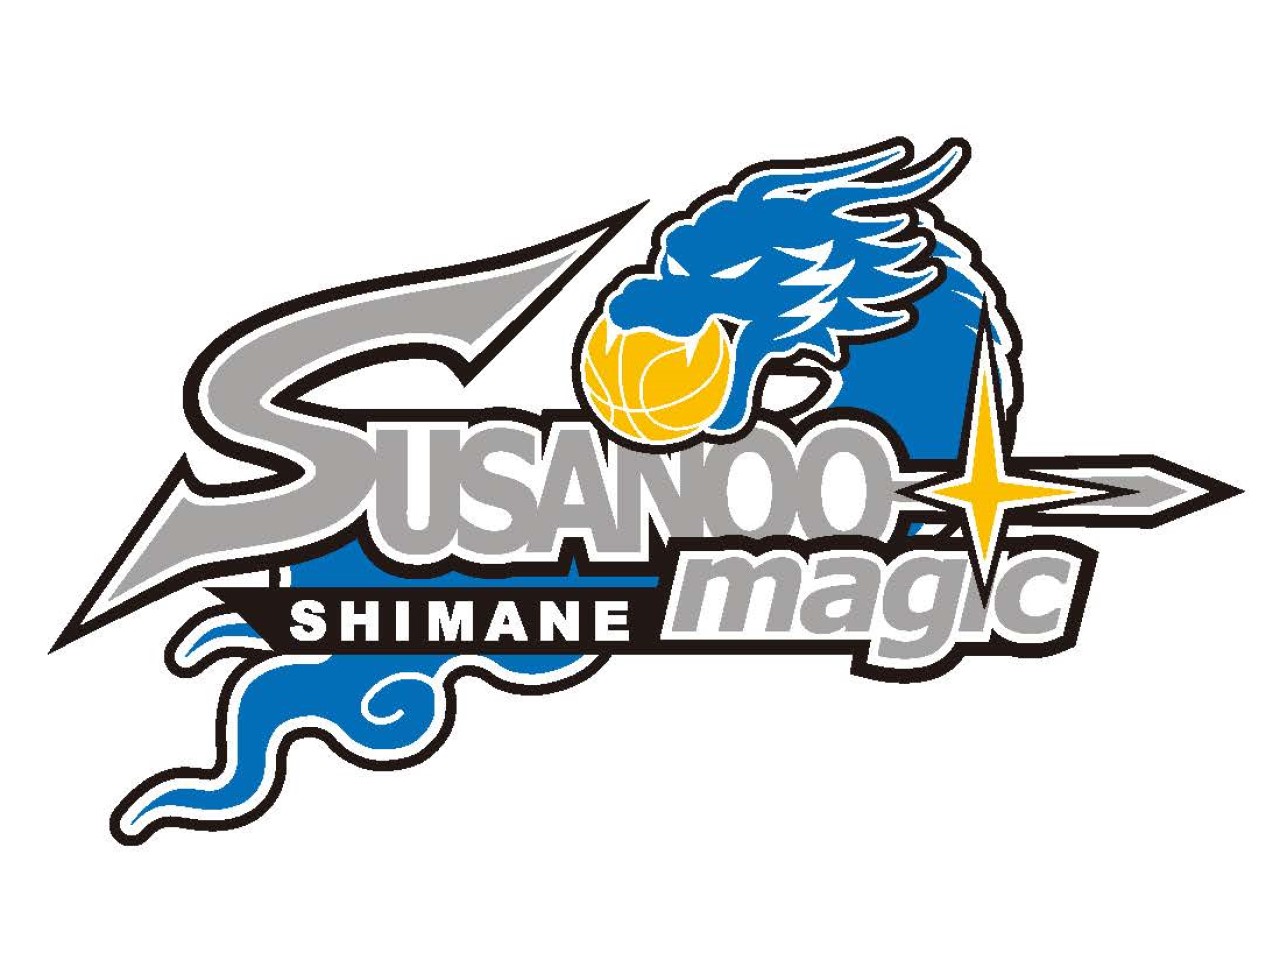 島根スサノオマジックのオフィシャルスポンサー契約を締結しました。